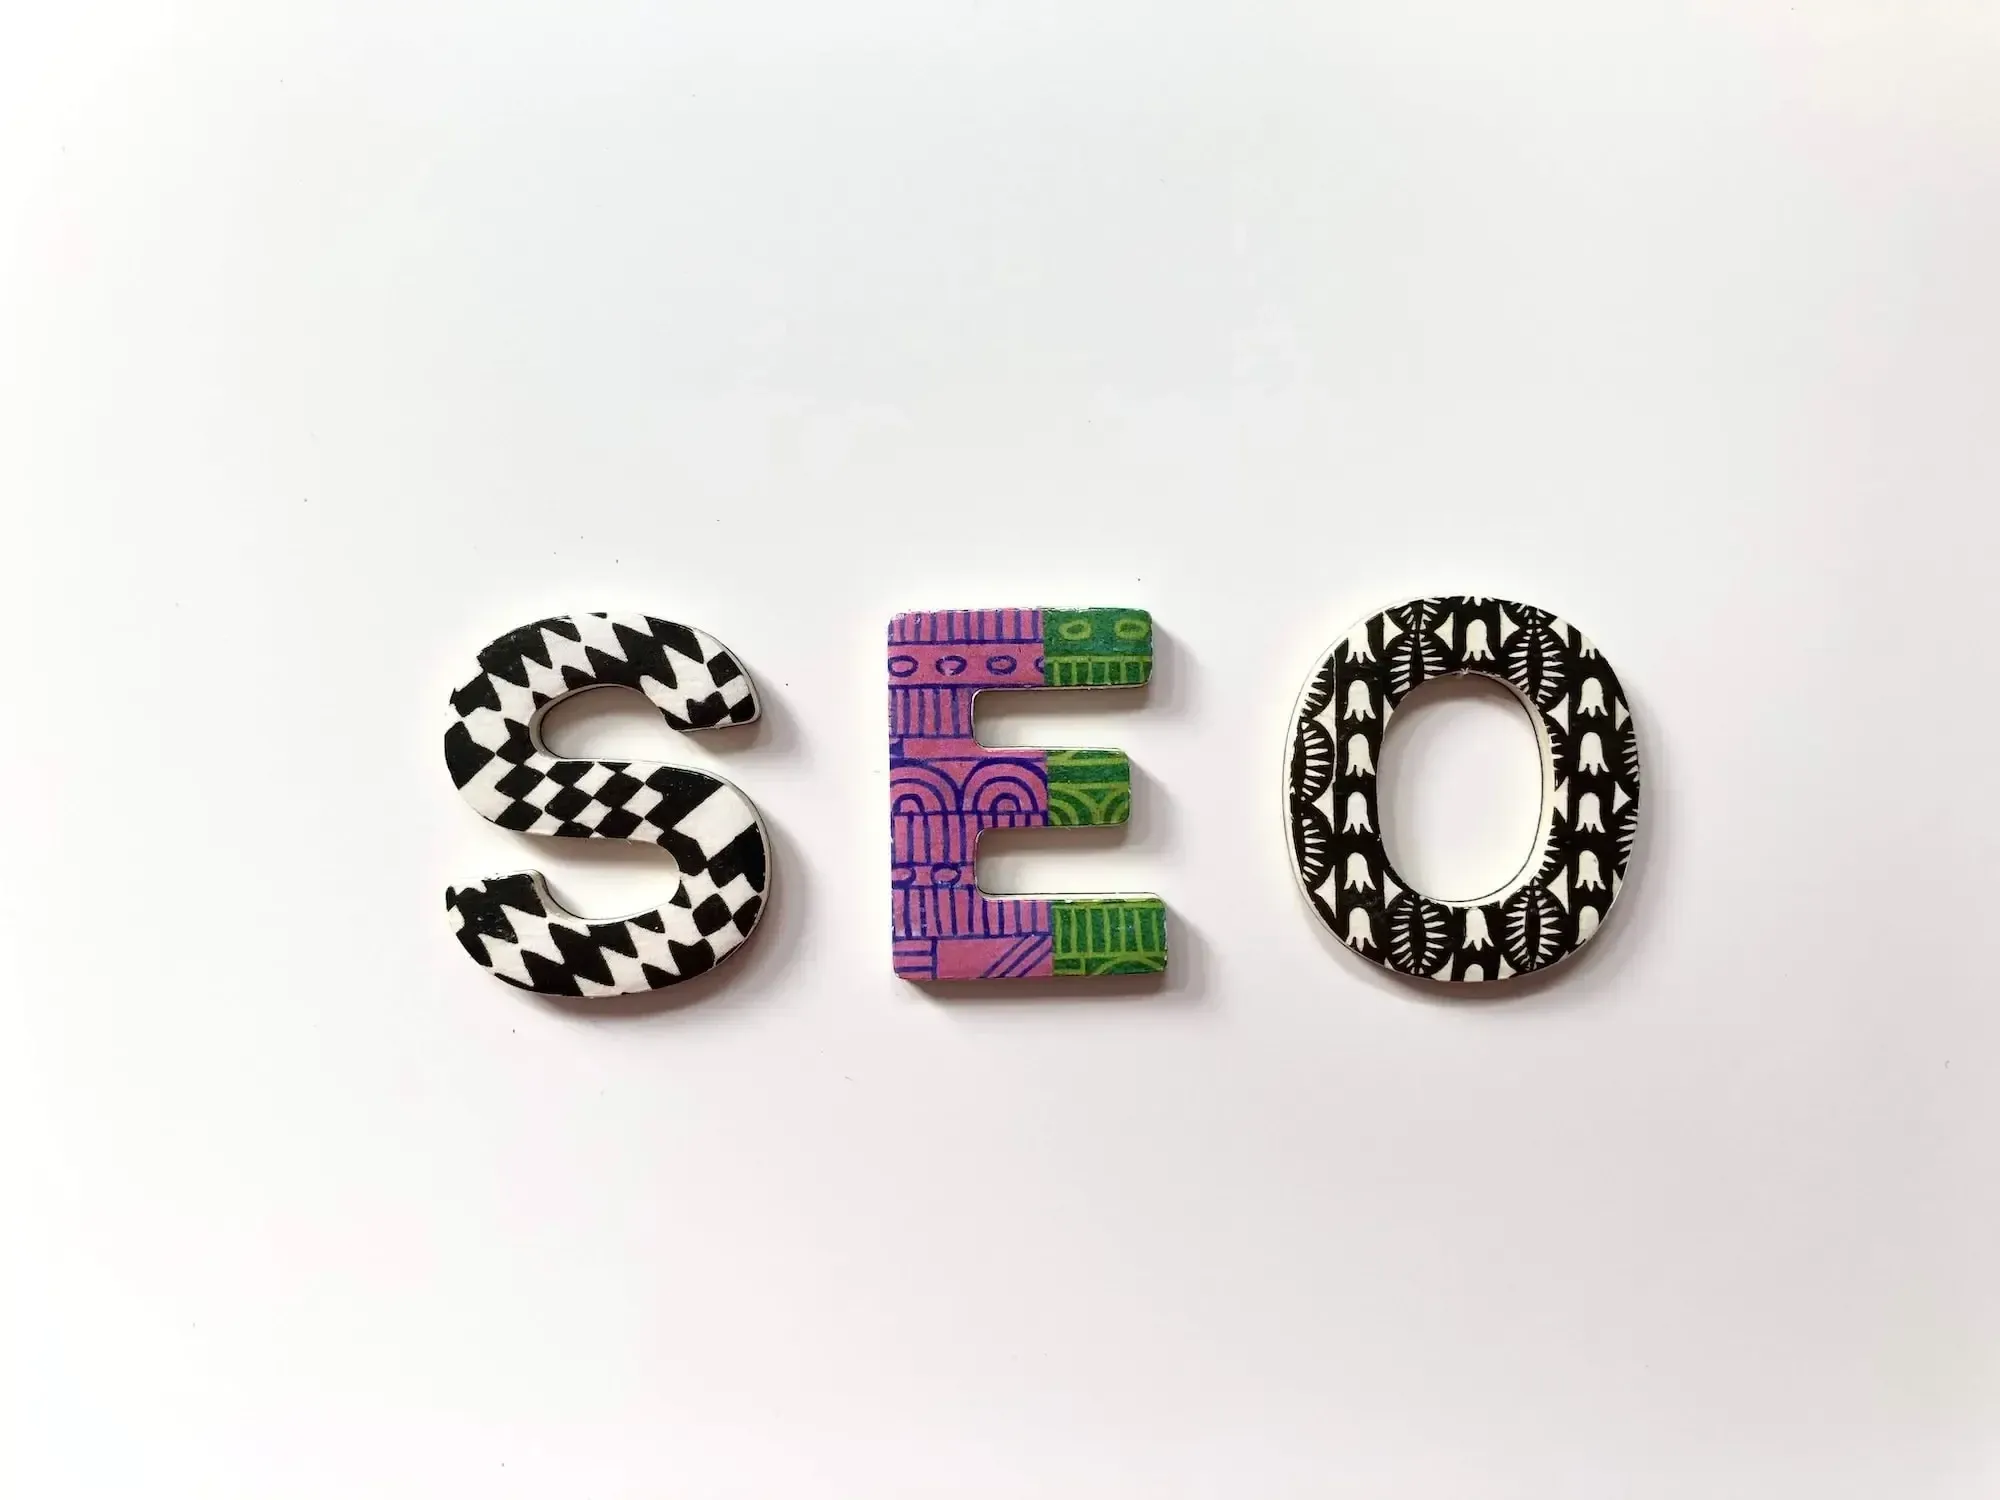 Weißer Hintergrund, drei Buchstaben mit unterschiedlichen Mustern und Farben, die "SEO" buchstabieren.